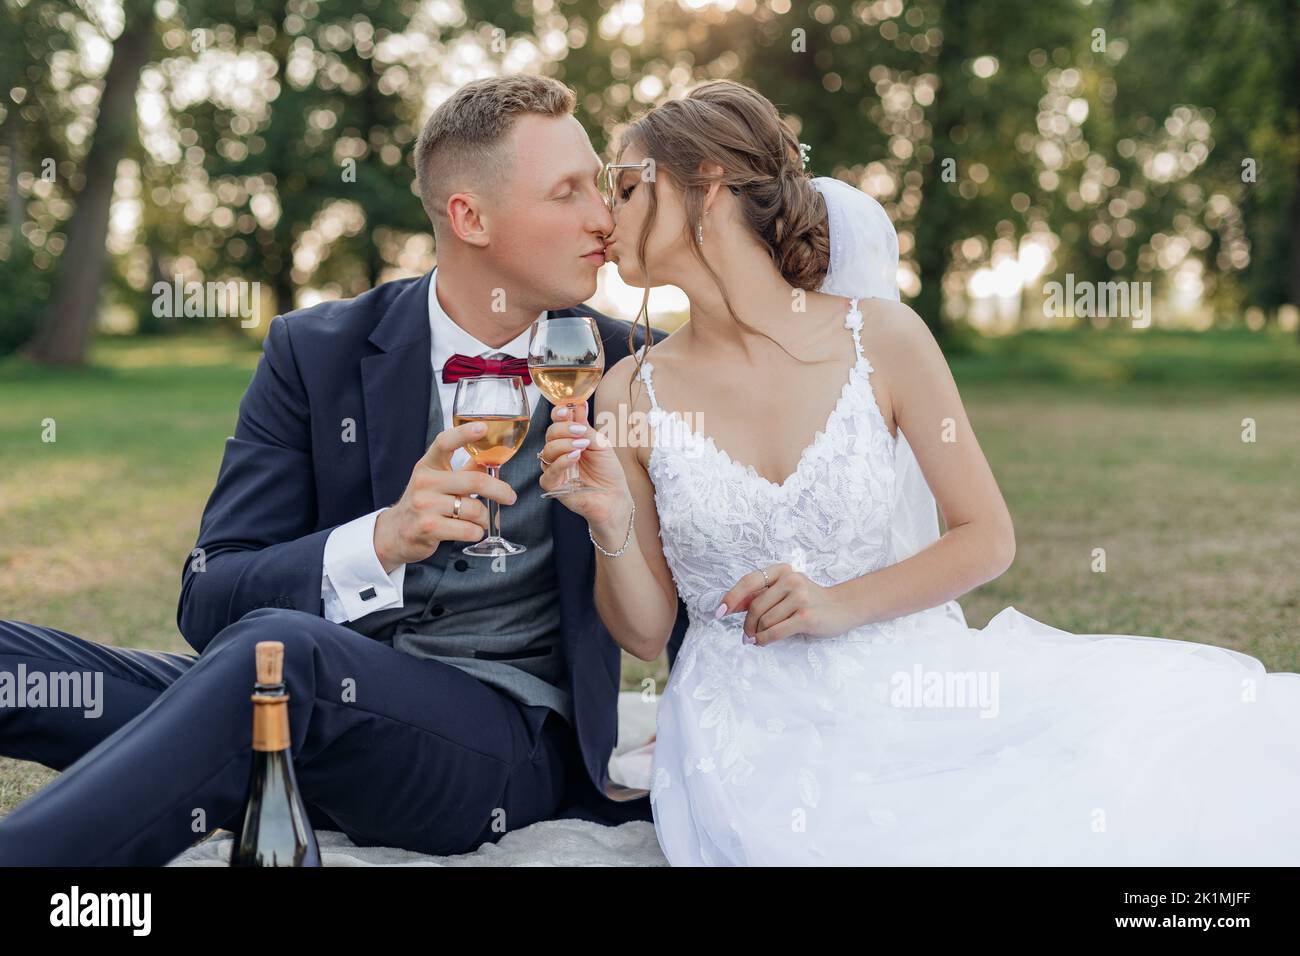 Portrait eines wunderbaren Brautpaares, das im Sommer auf grünem Gras im Park sitzt, Weingläser hält und sich küsst. Liebe. Stockfoto